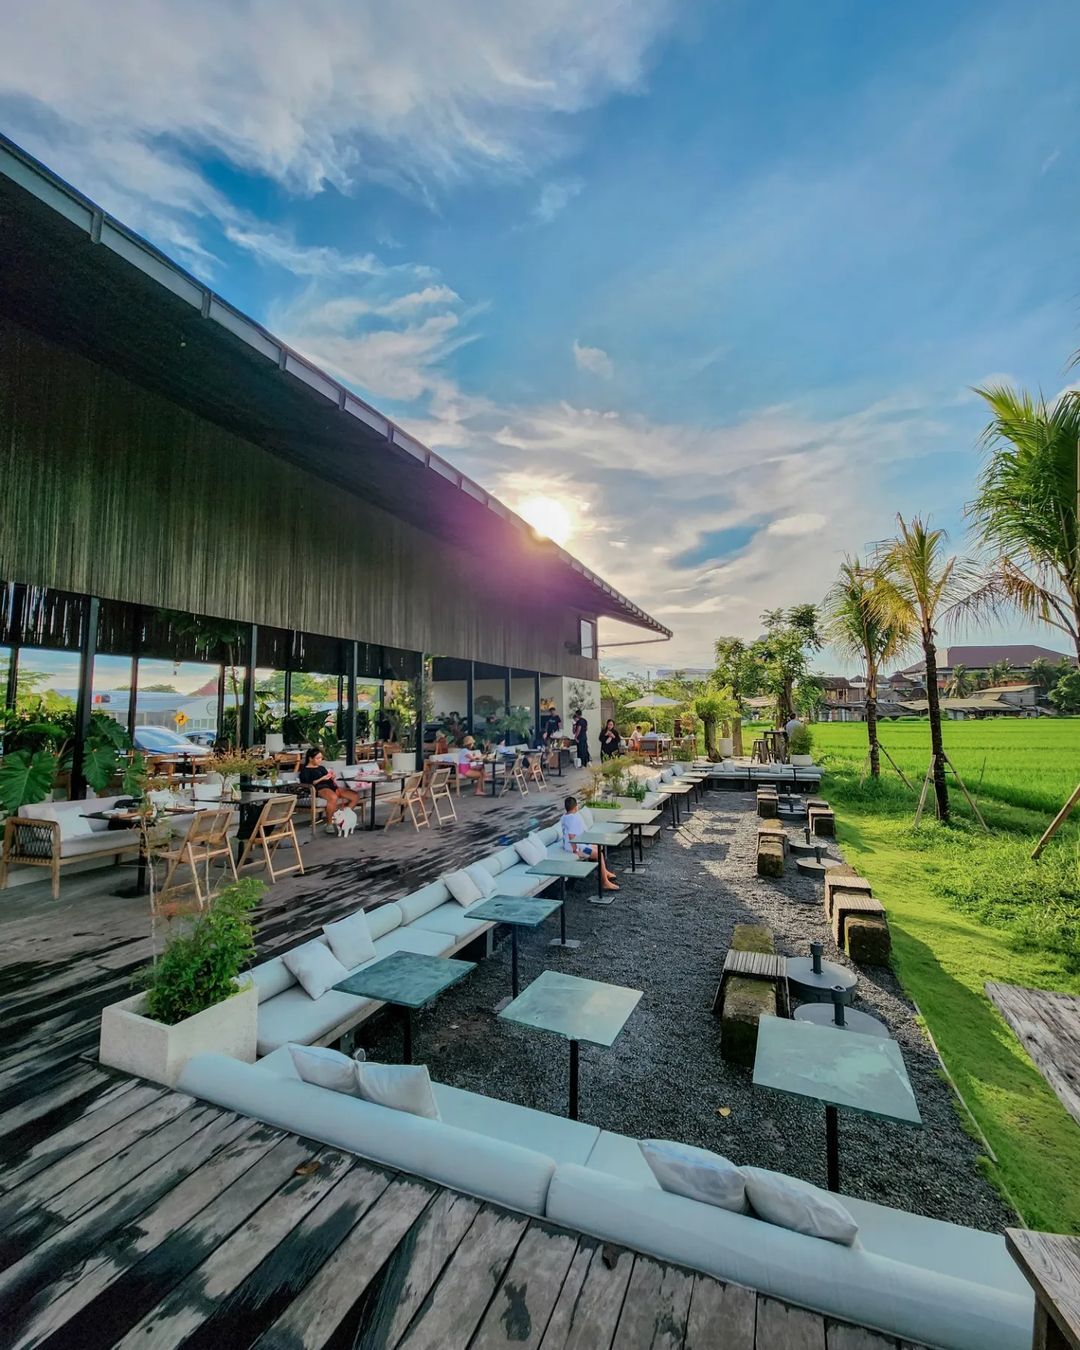 Fasilitas Umane Cafe Bali Image From @uma_dj